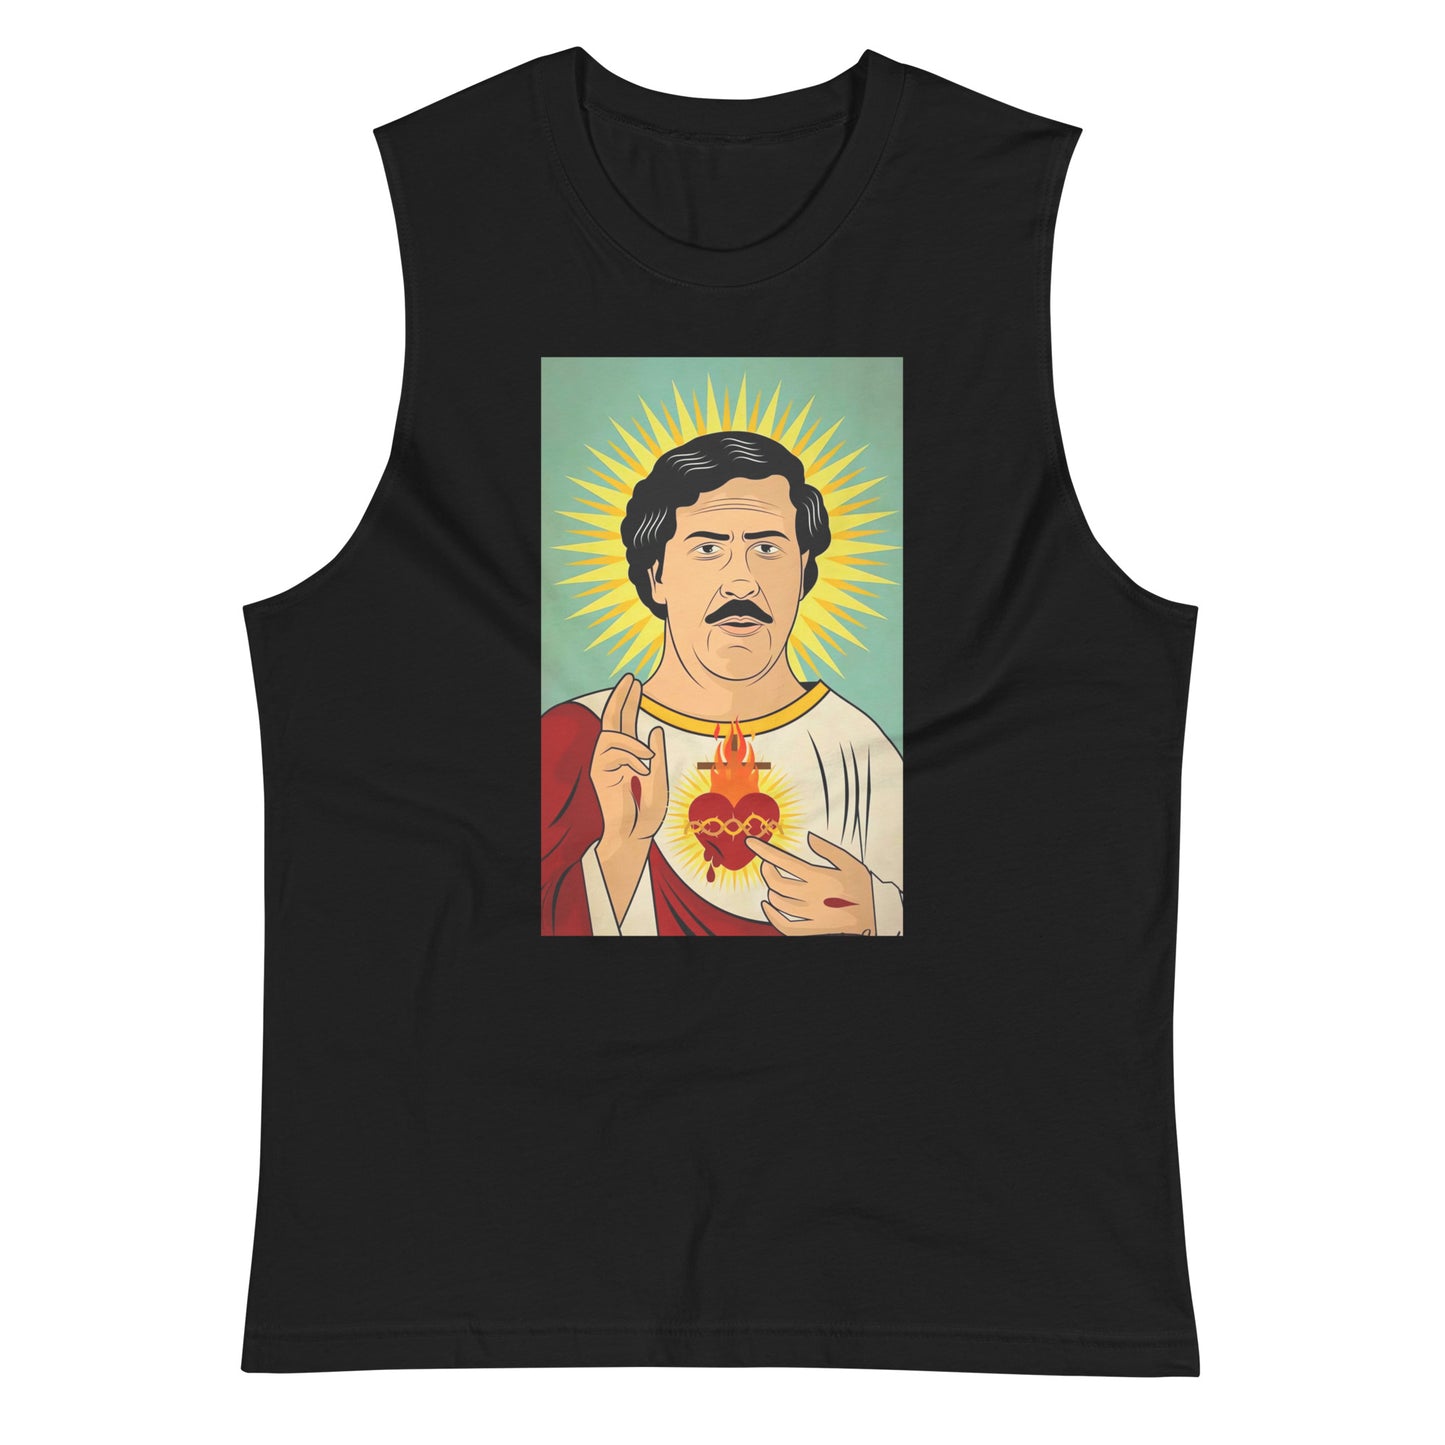 Camiseta sin mangas San Pablo Escobar, Descubre calidad excepcional y estampados duraderos. Encuentra estilo y orgullo en cada prenda. 